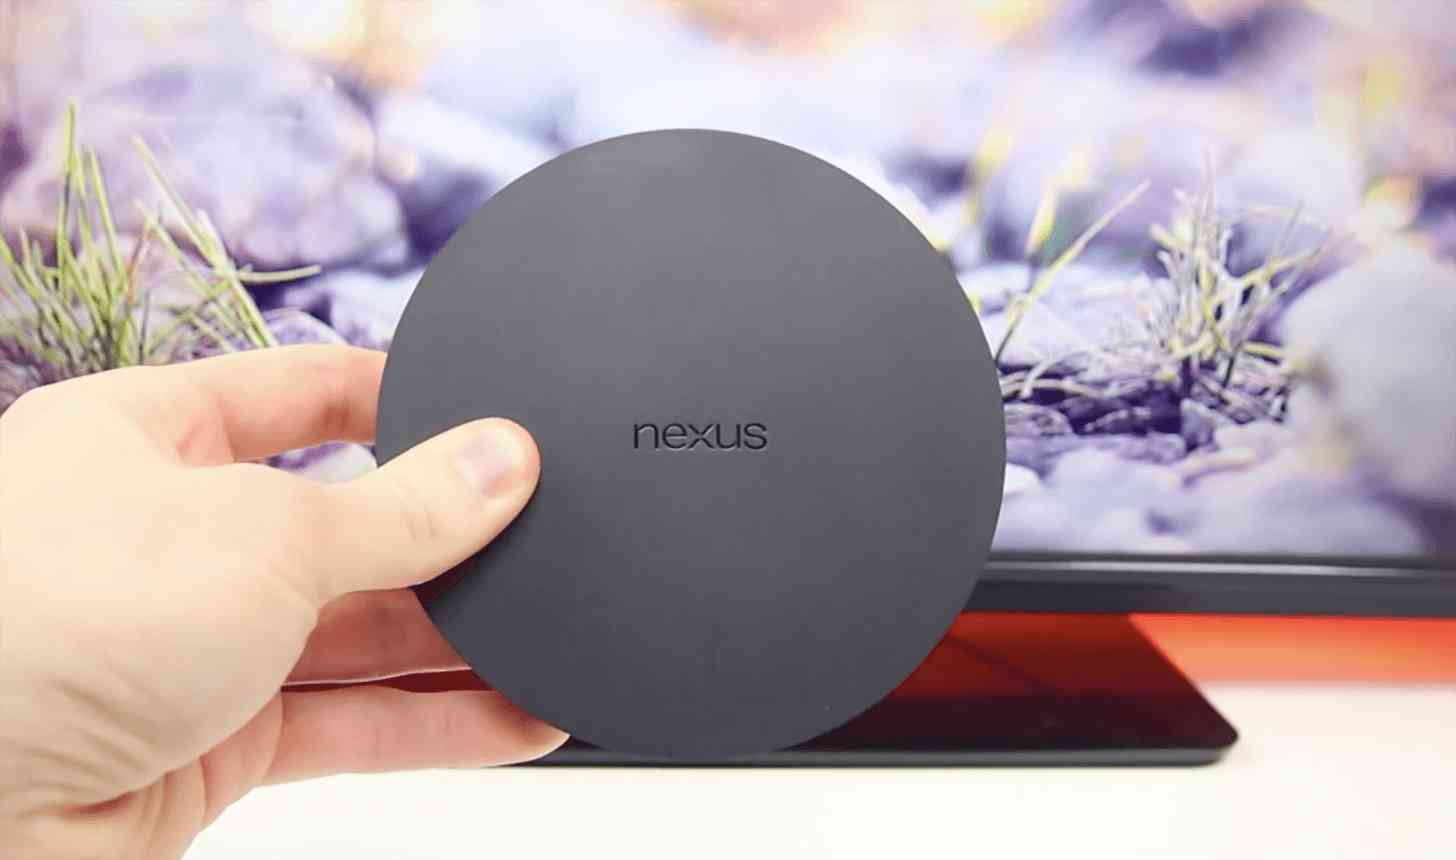 Google Nexus Player hands-on video